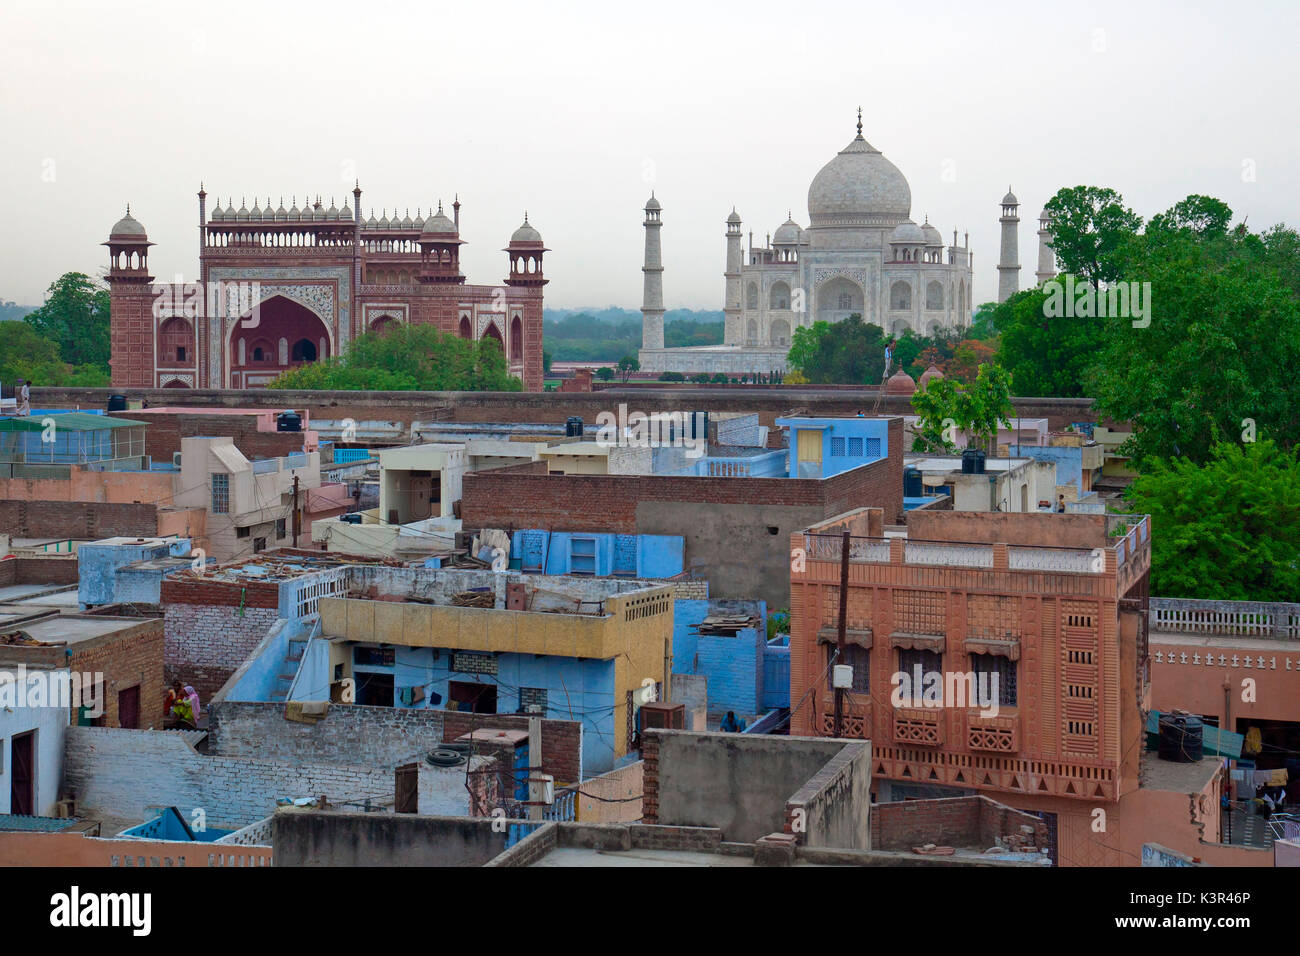 Le case dei poveri in contrasto con lo splendore del Taj Mahal Agra, India Foto Stock